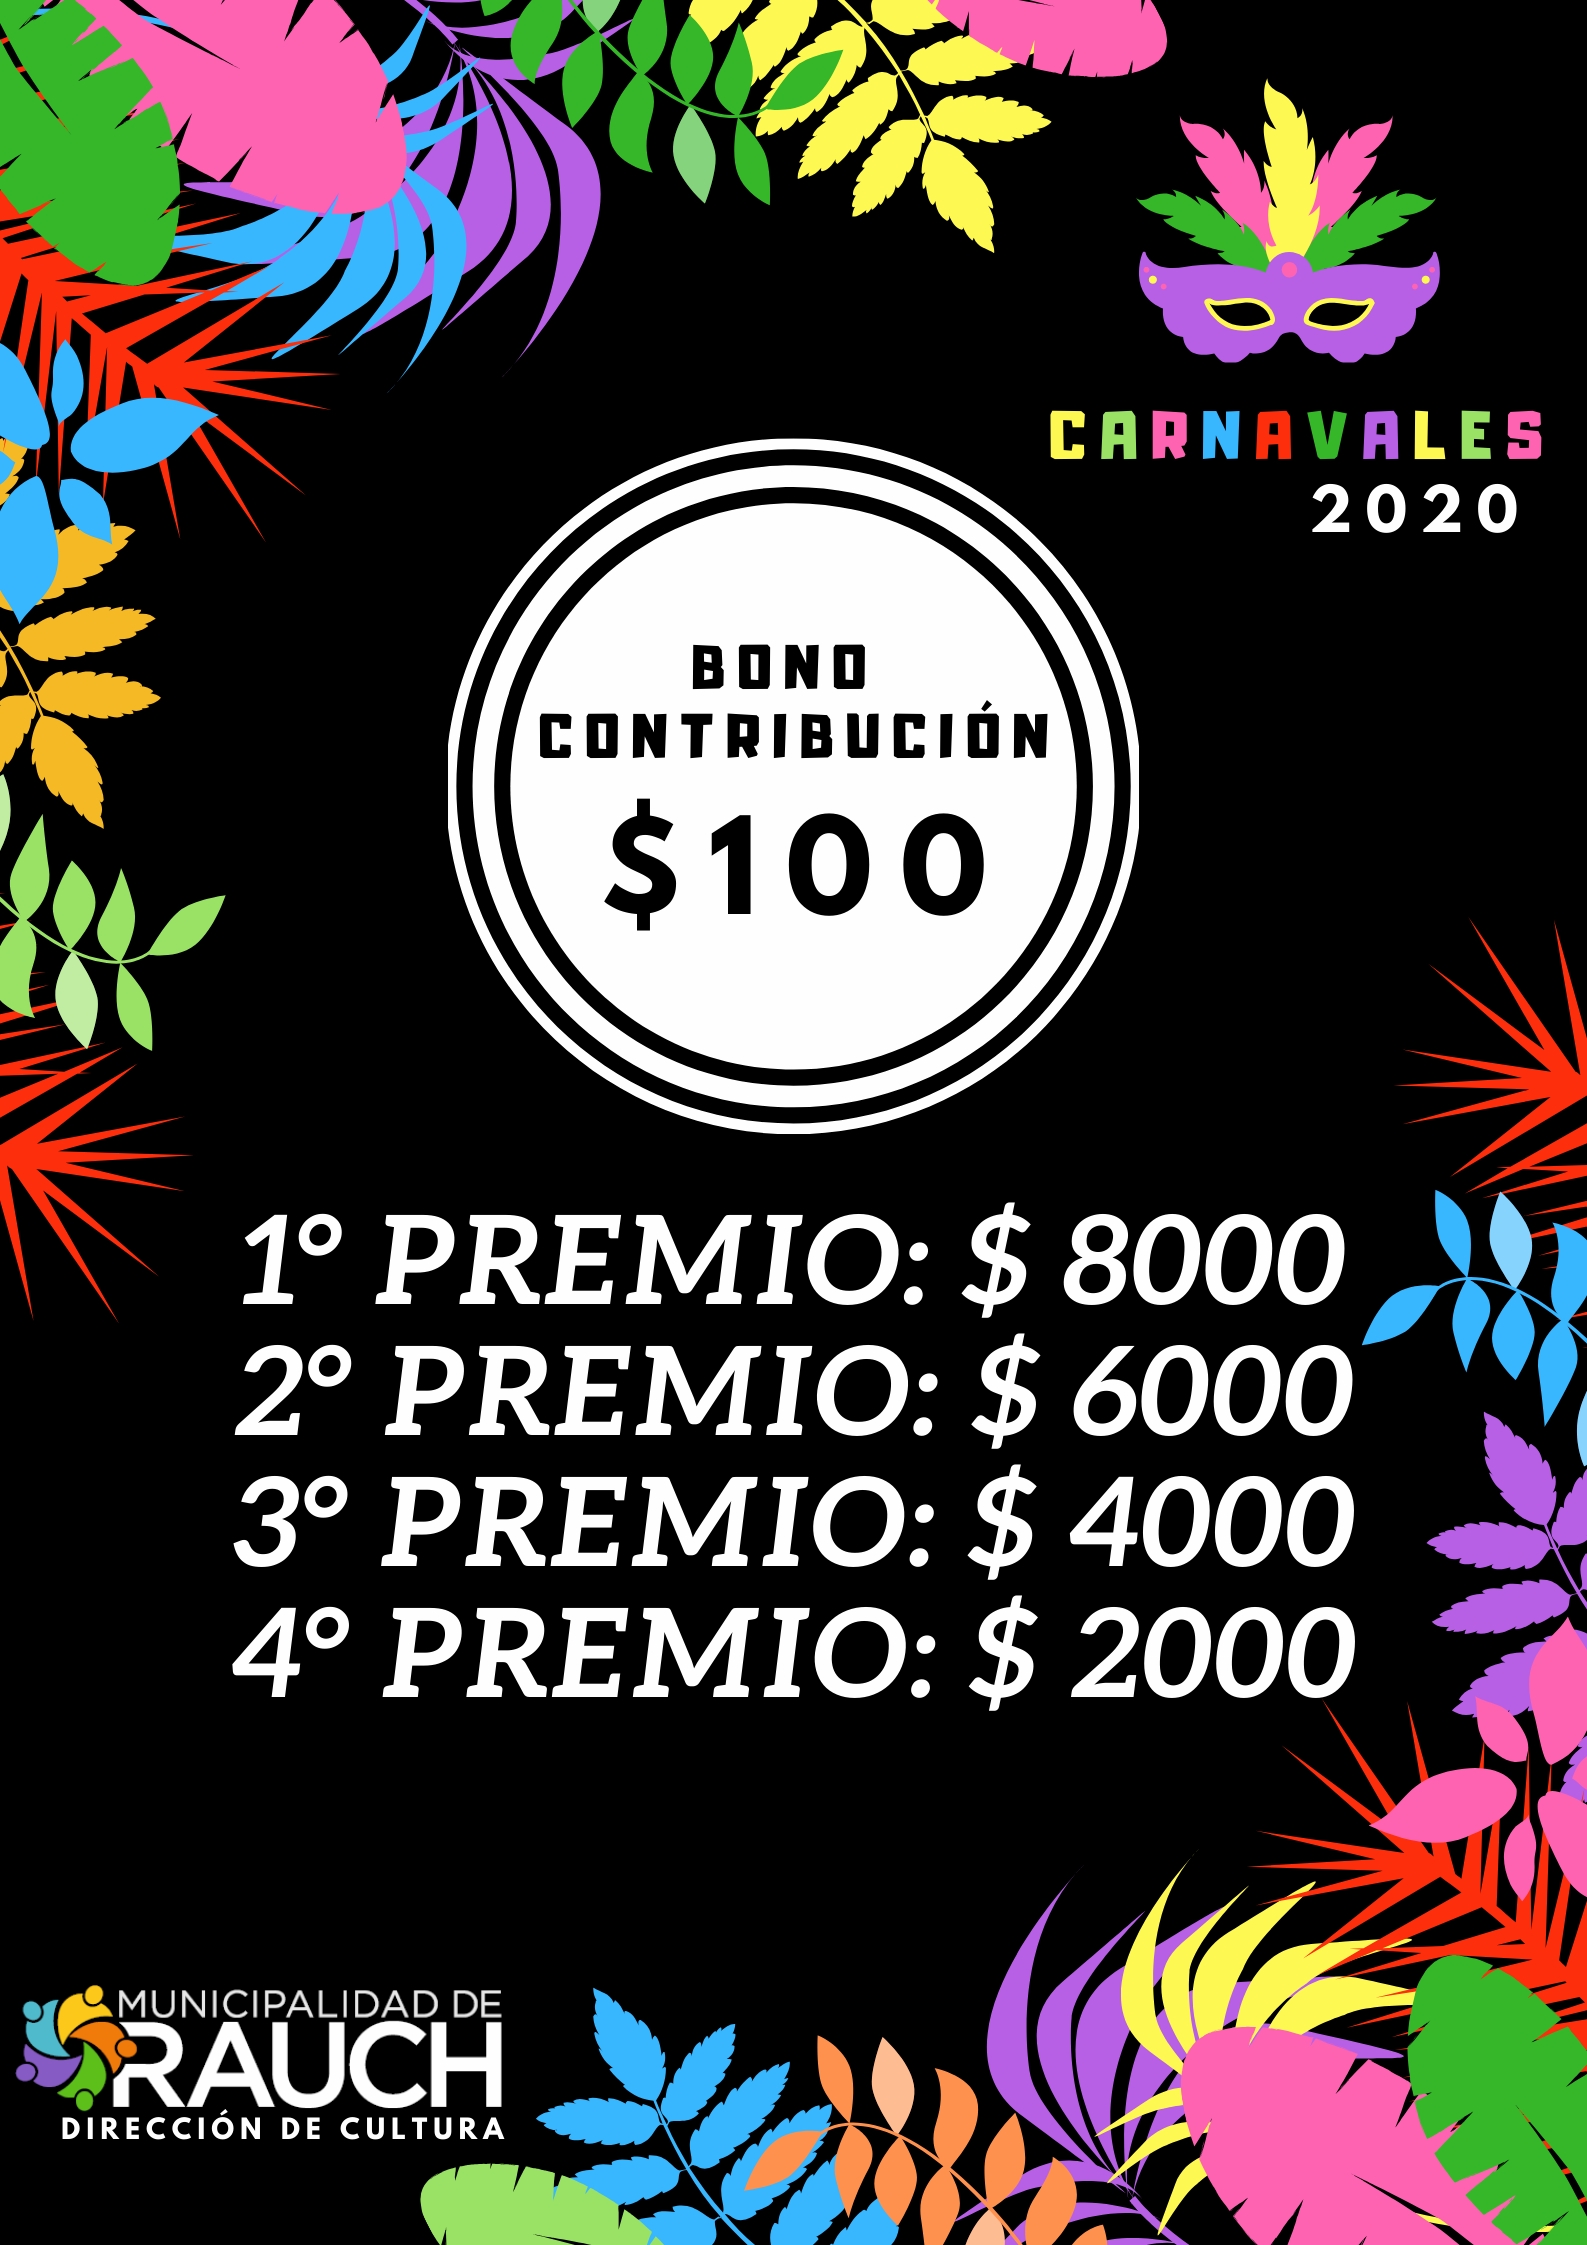 Carnavales 2020 - bono contribución